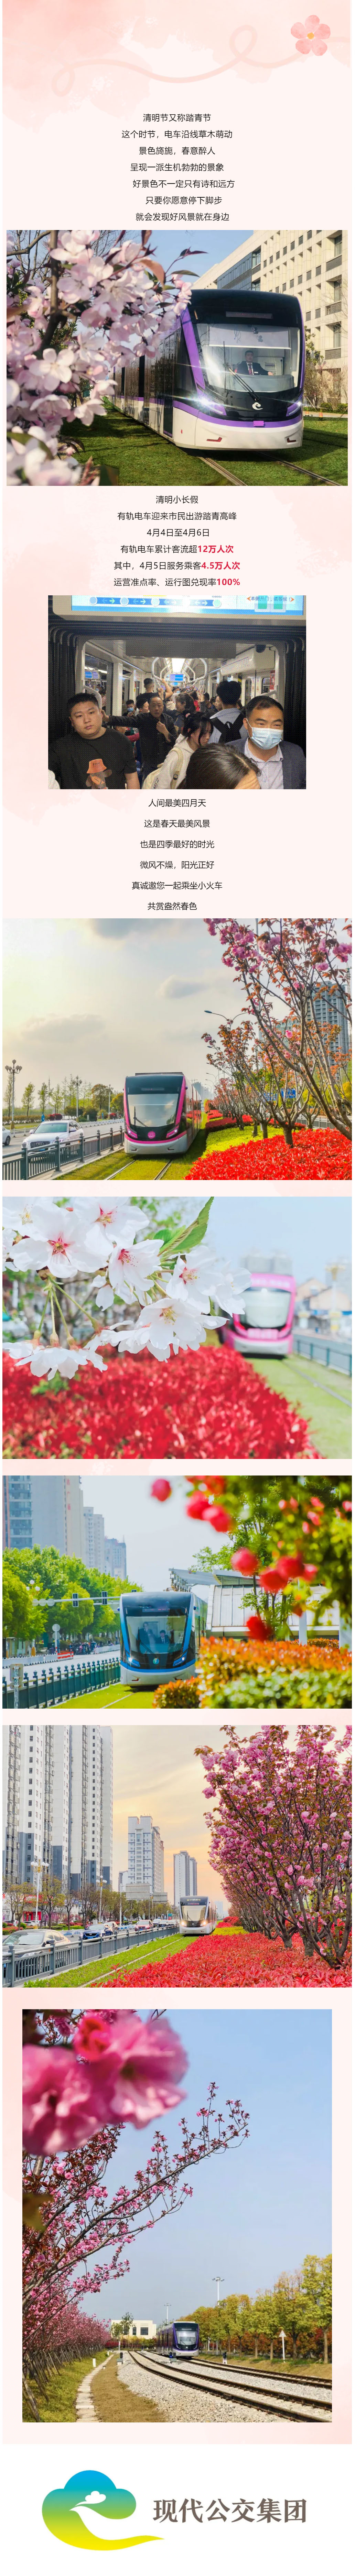 清明小长假12万市民和小火车共赏盎然春色